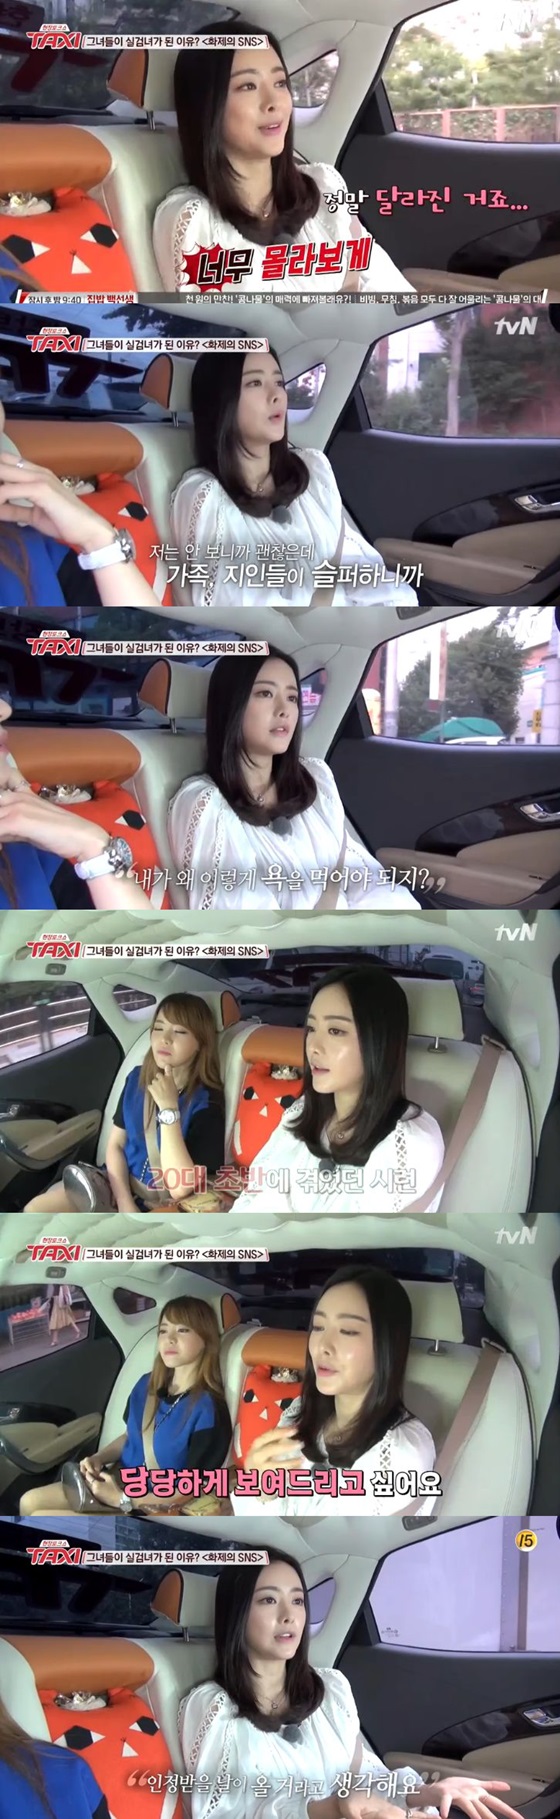 지난 11일 tvN \'현장토크쇼 택시\'에 출연한 홍수아 